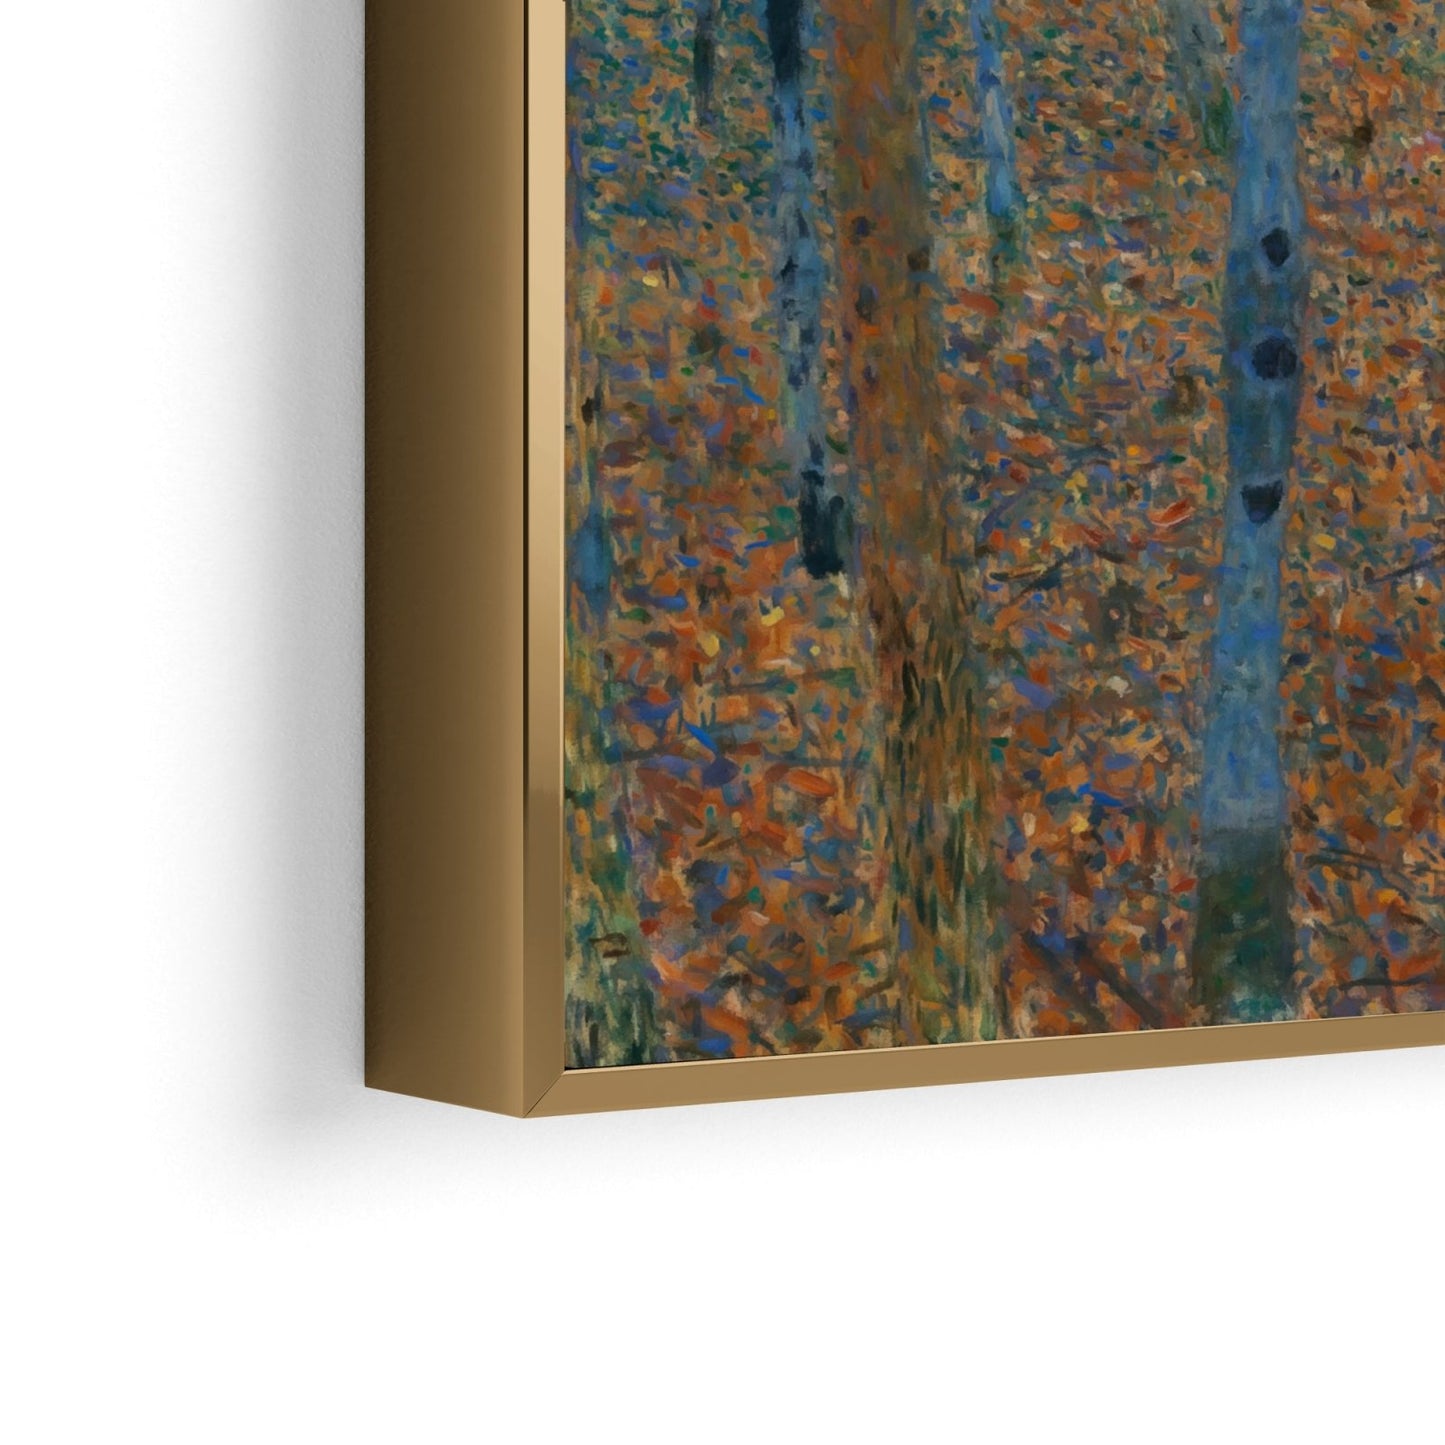 Berkenbos - Gustav Klimt